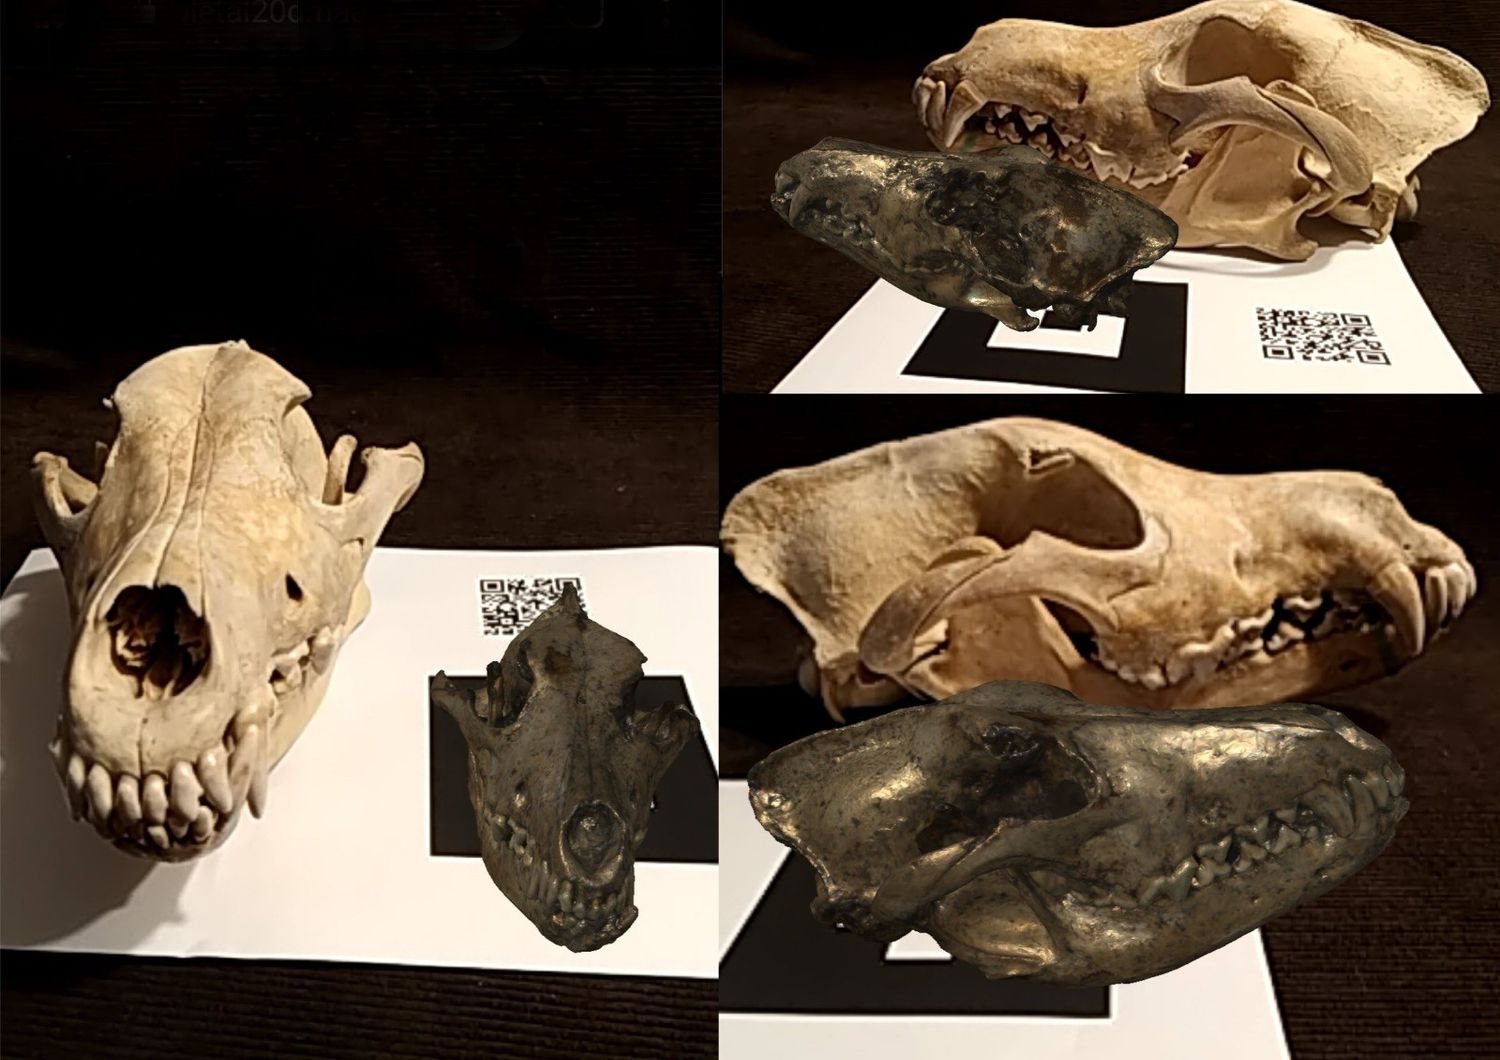 La realt&agrave; aumentata mette a confronto il cranio di lupo attuale (in chiaro) e il fossile digitale di Canis borjgali (in scuro)